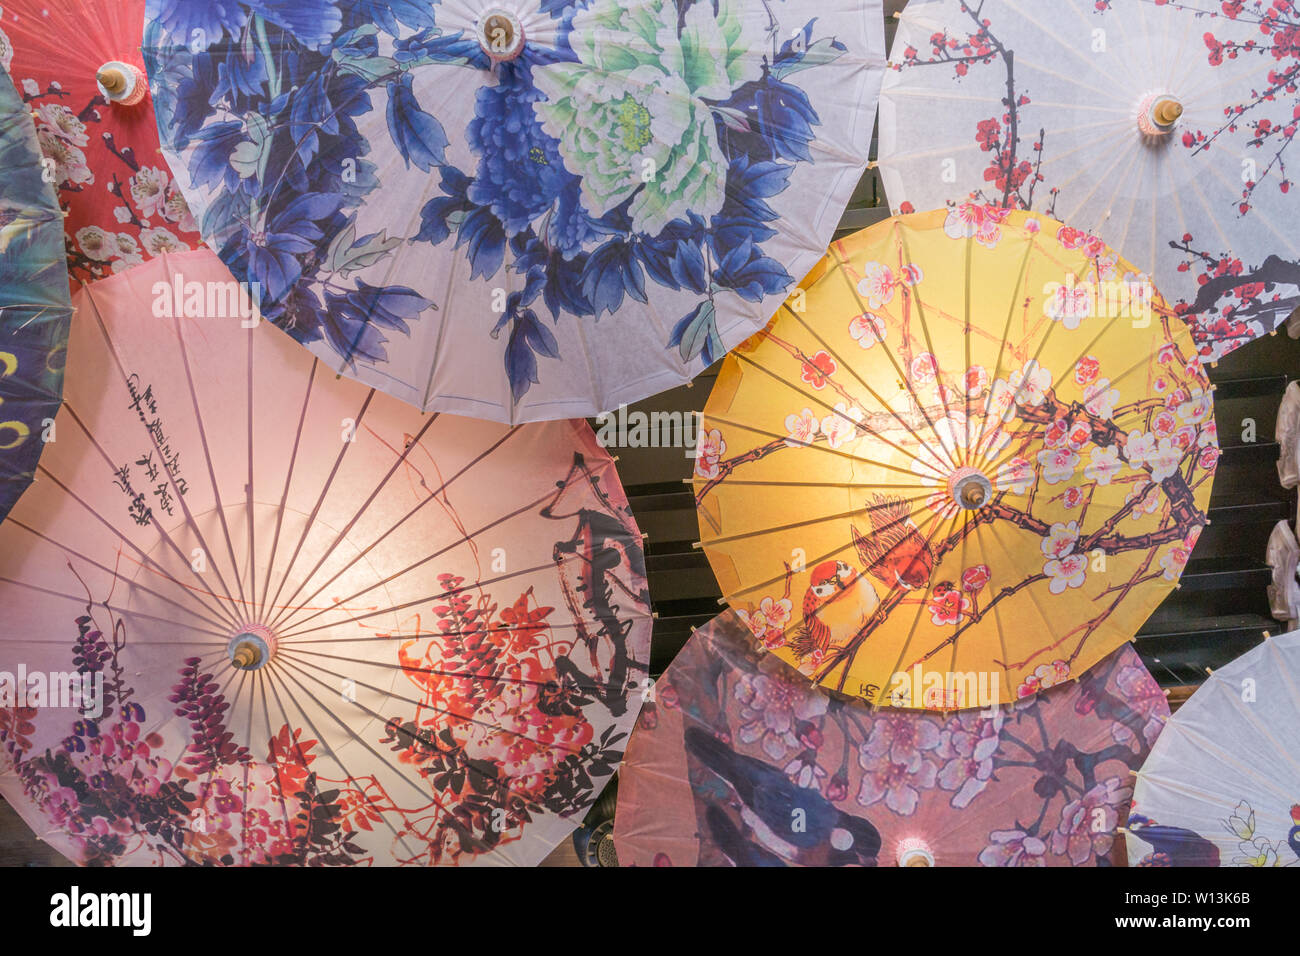 Ombrelli cinesi immagini e fotografie stock ad alta risoluzione - Alamy